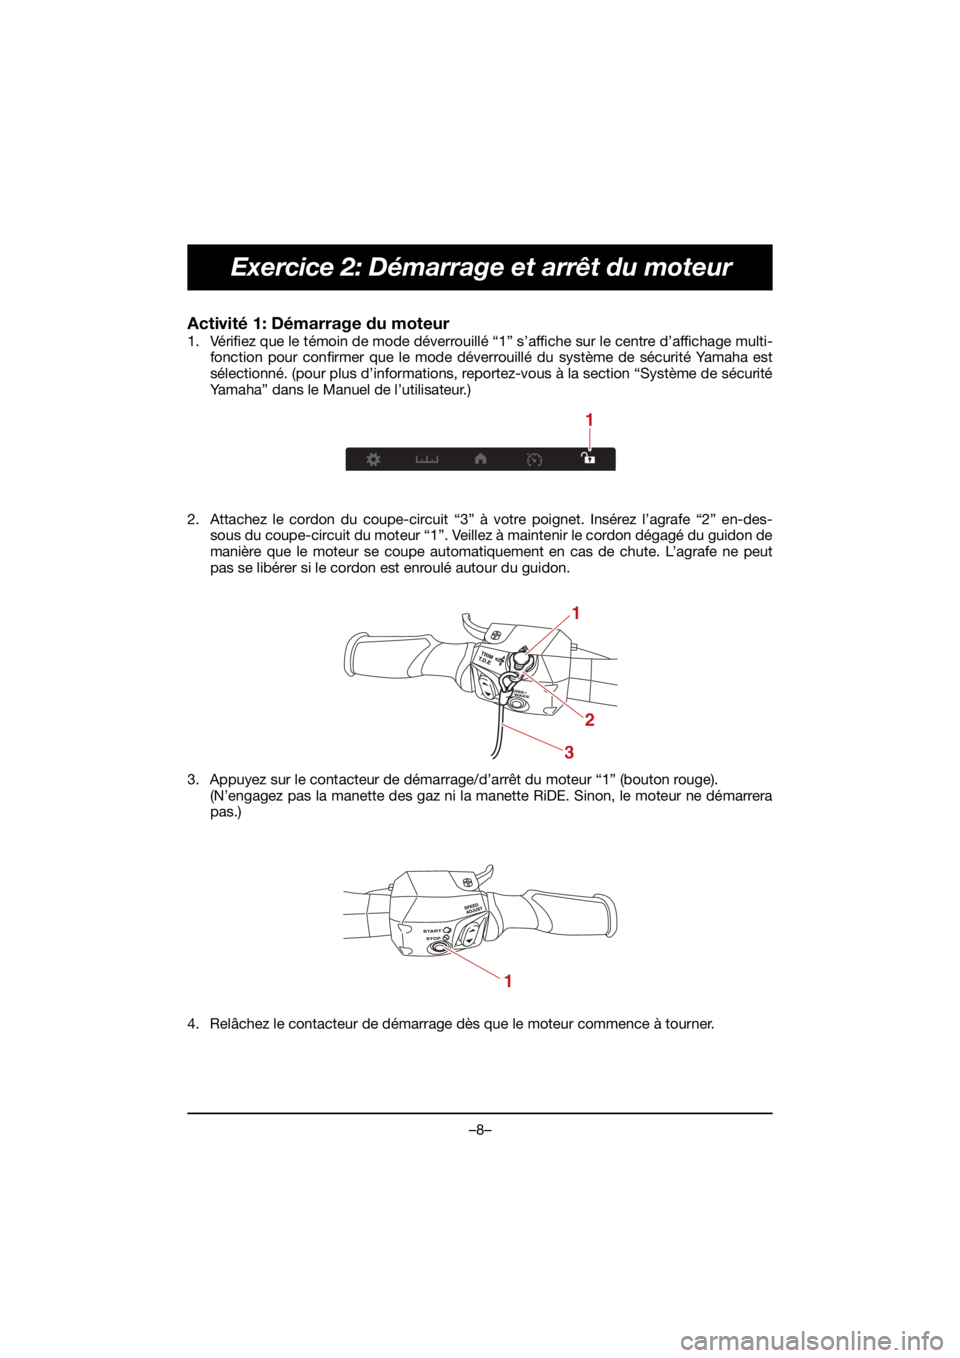 YAMAHA GP1800R SVHO 2021  Manuale de Empleo (in Spanish) –8–
Exercice 2: Démarrage et arrêt du moteur
Activité 1: Démarrage du moteur 
1. Vérifiez que le témoin de mode déverrouillé “1” s’affiche sur le centre d’affichage multi-fonction 